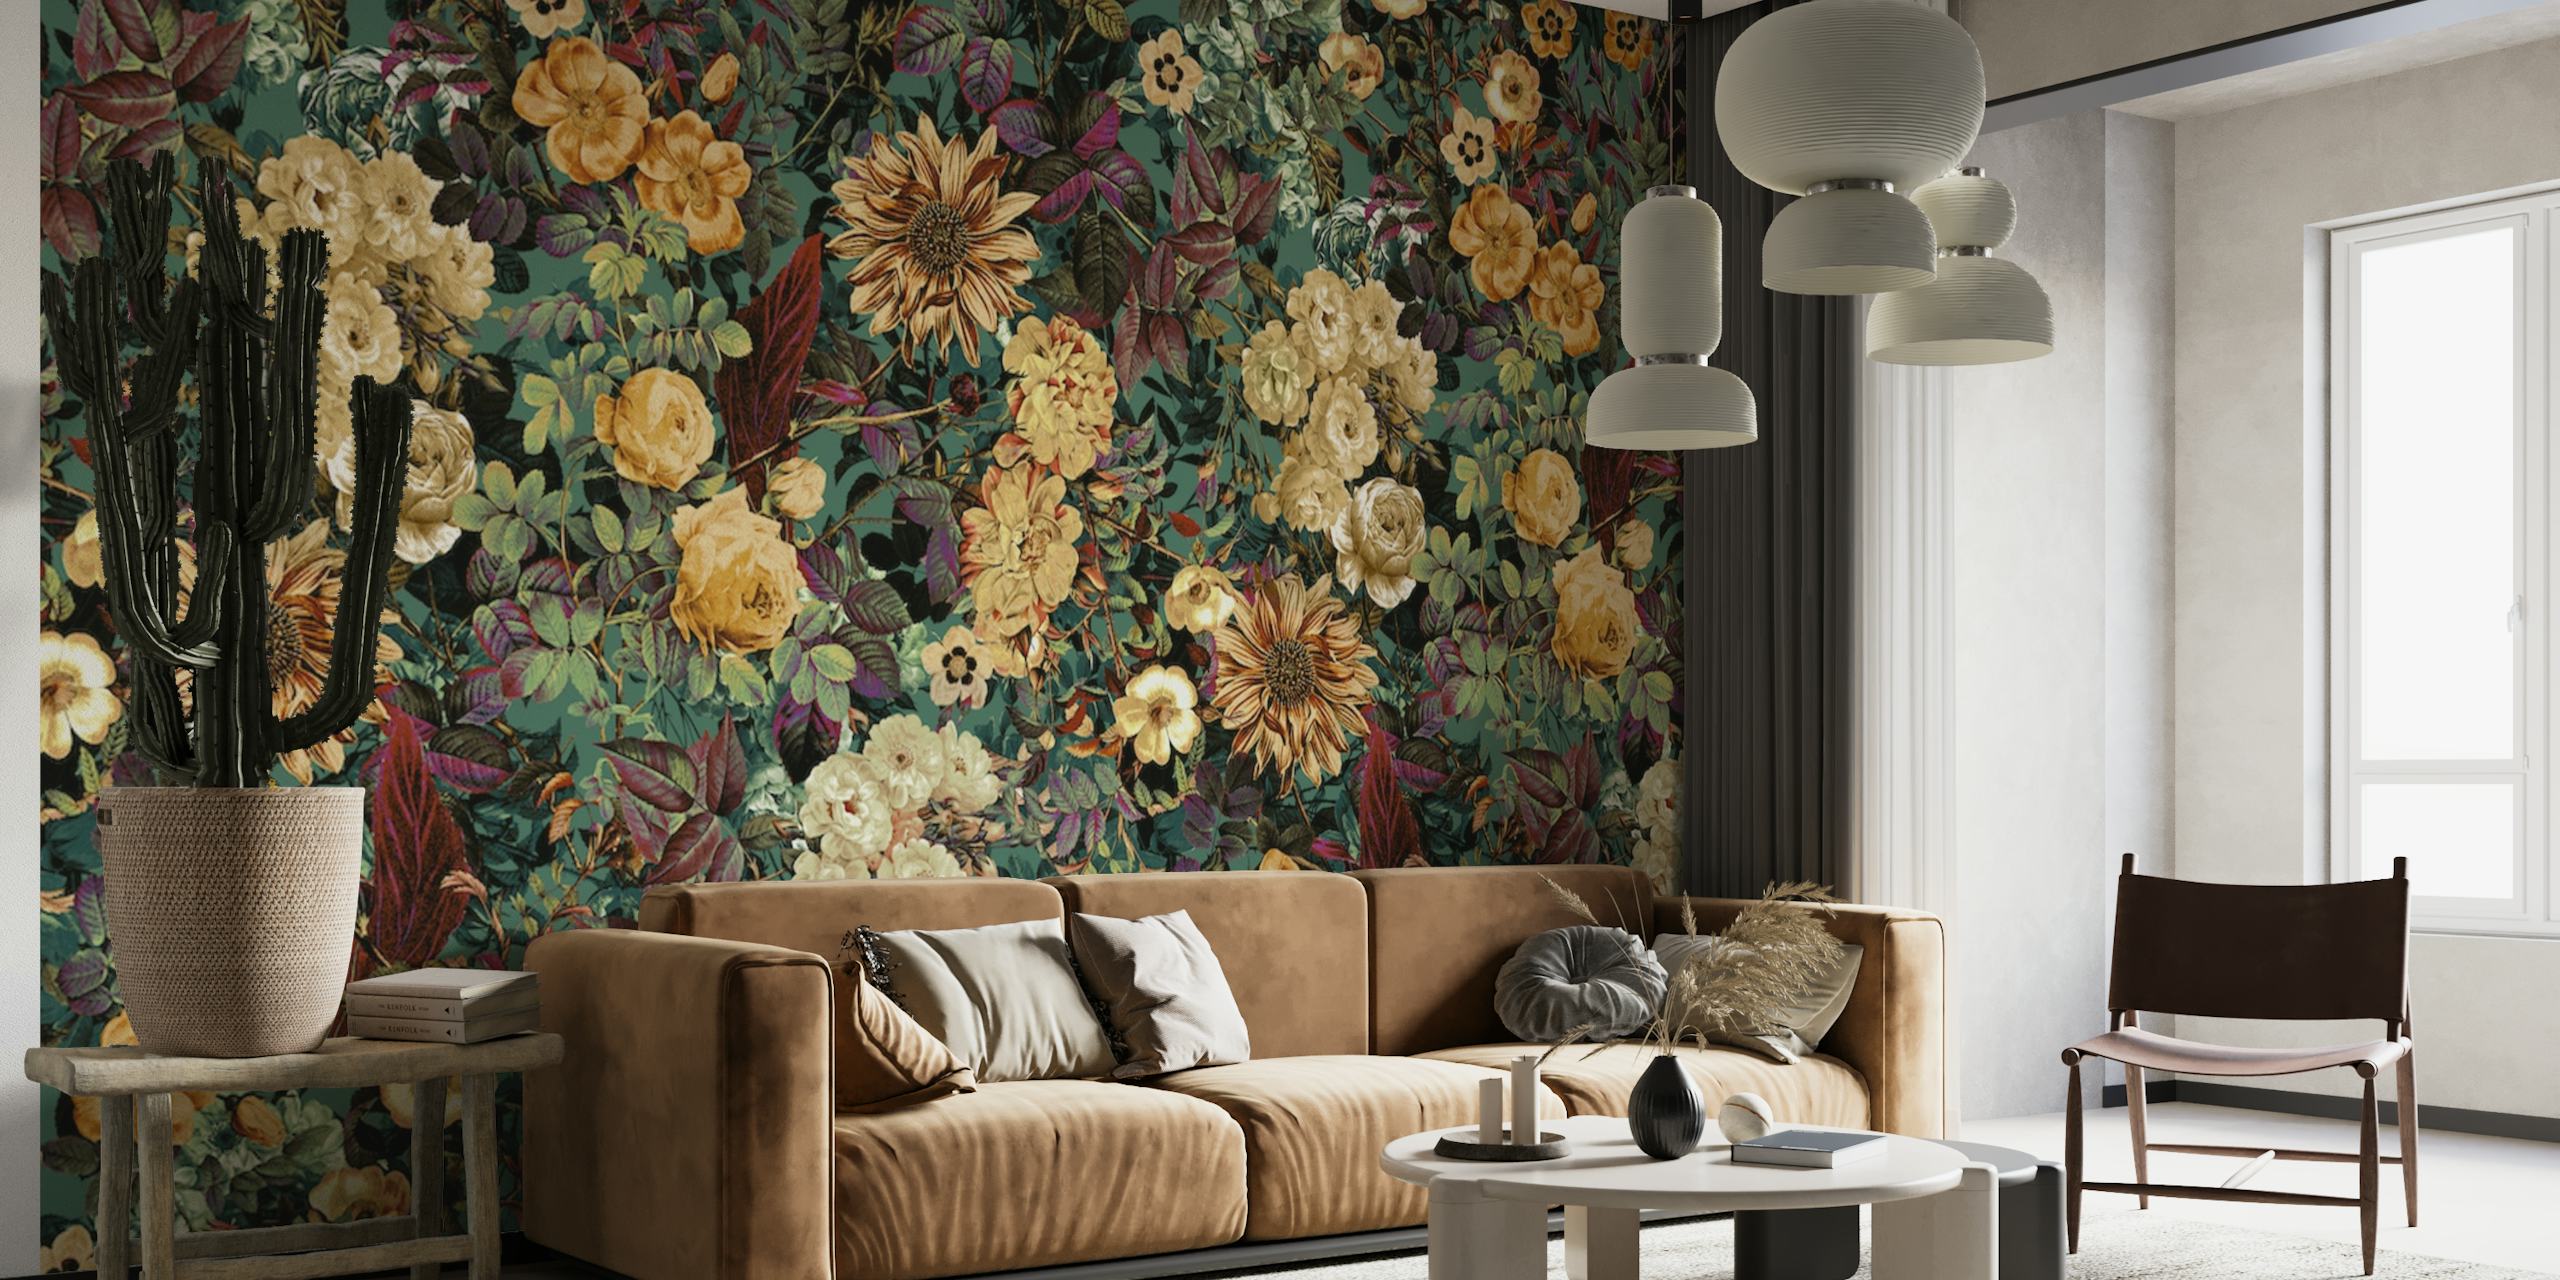 Florales Wandbild „Isolated Blooms“ mit dunklem Hintergrund und einer Mischung aus cremefarbenen und goldenen Blumen.